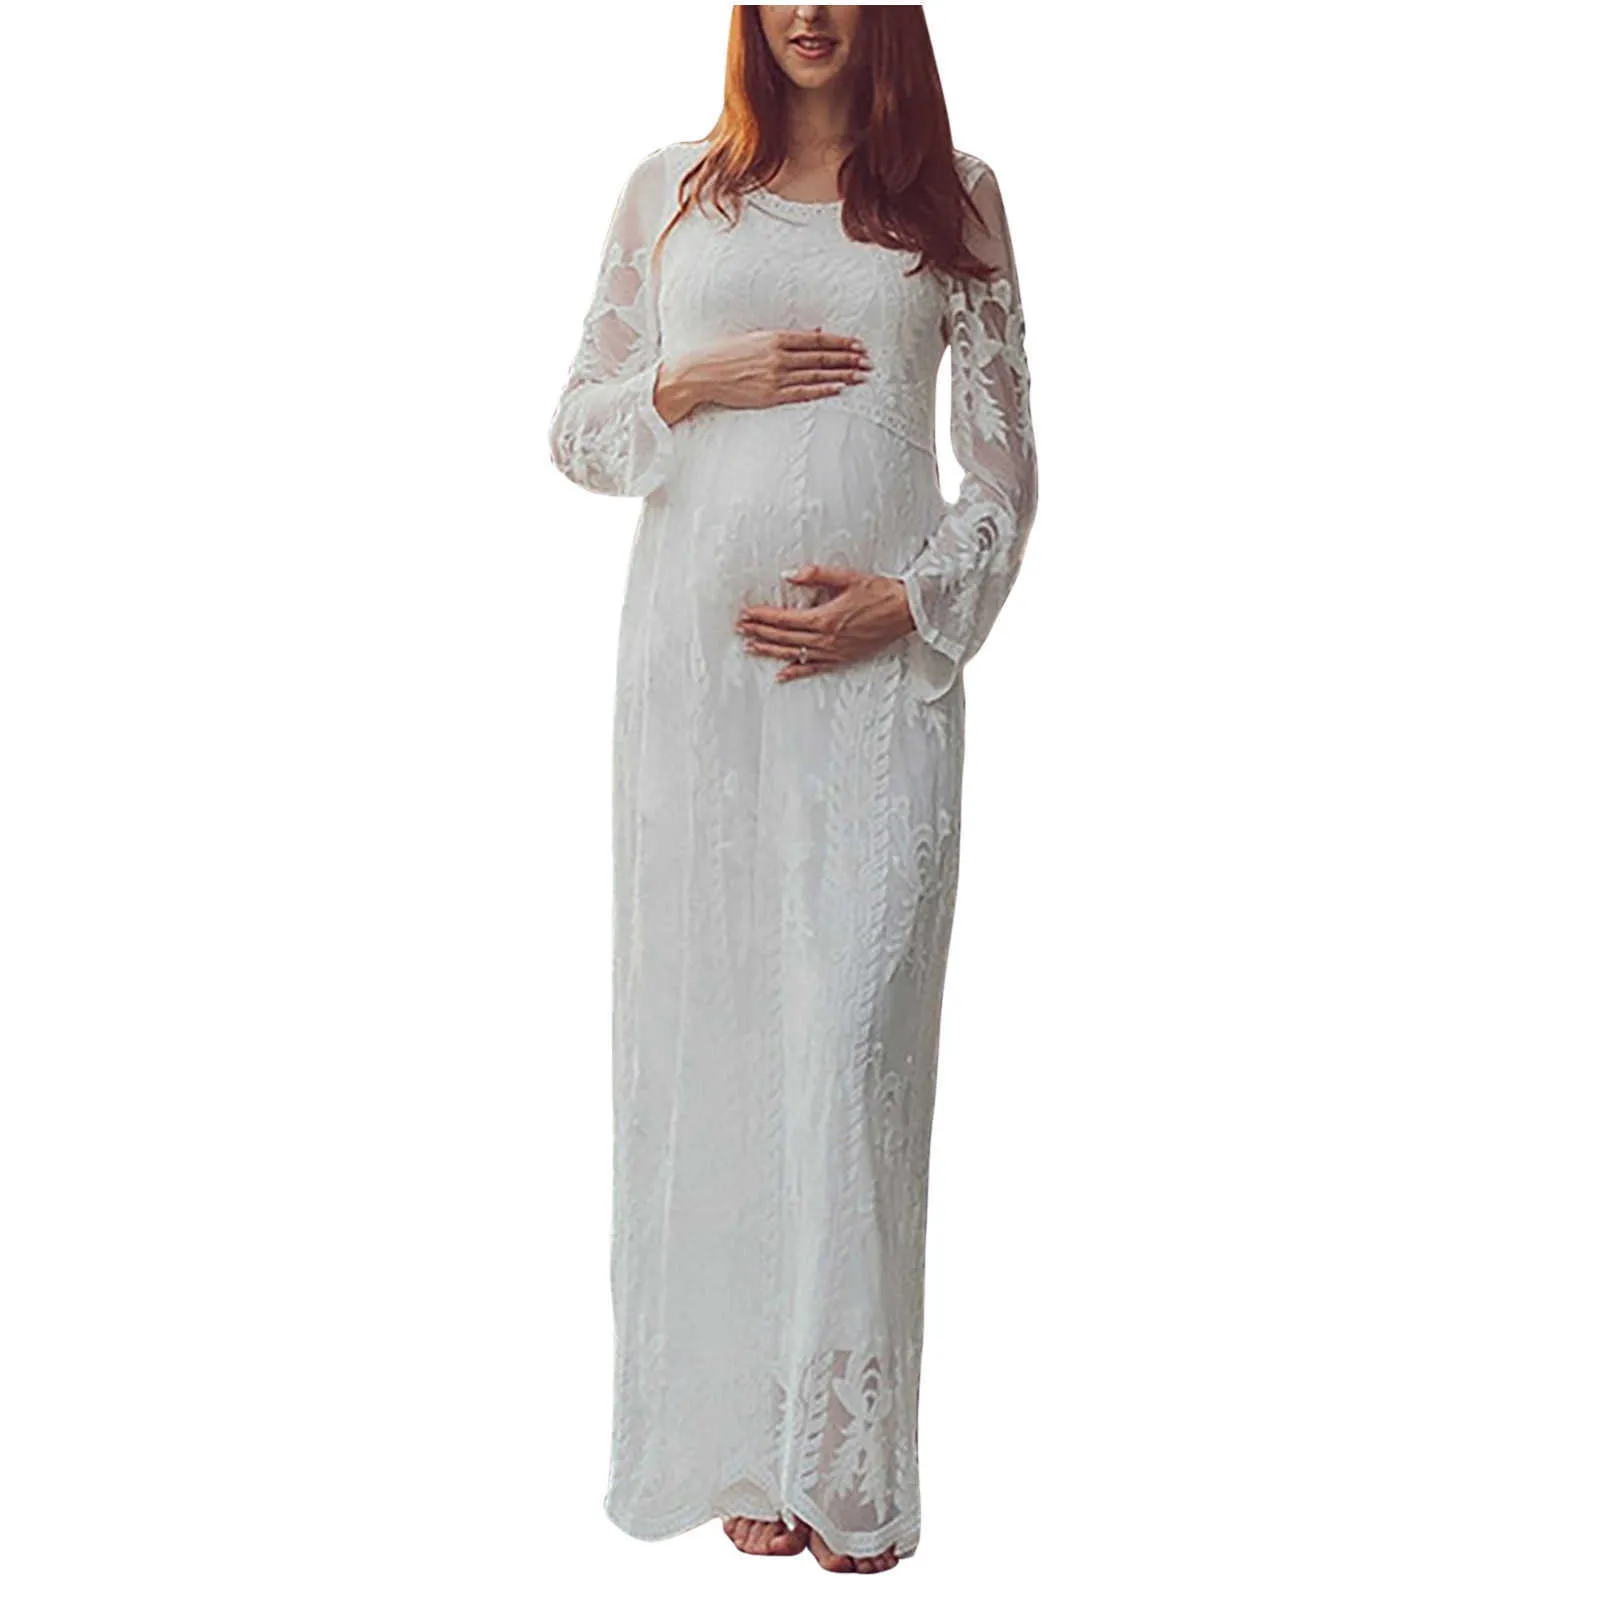 Mulheres Elegância Gravidez Maxi Vestido Longo Fotografia Pessoas Sólidos Vestidos Branco Vestidos de Maternidade para Photo Grávida Sessão de Photo Q0713